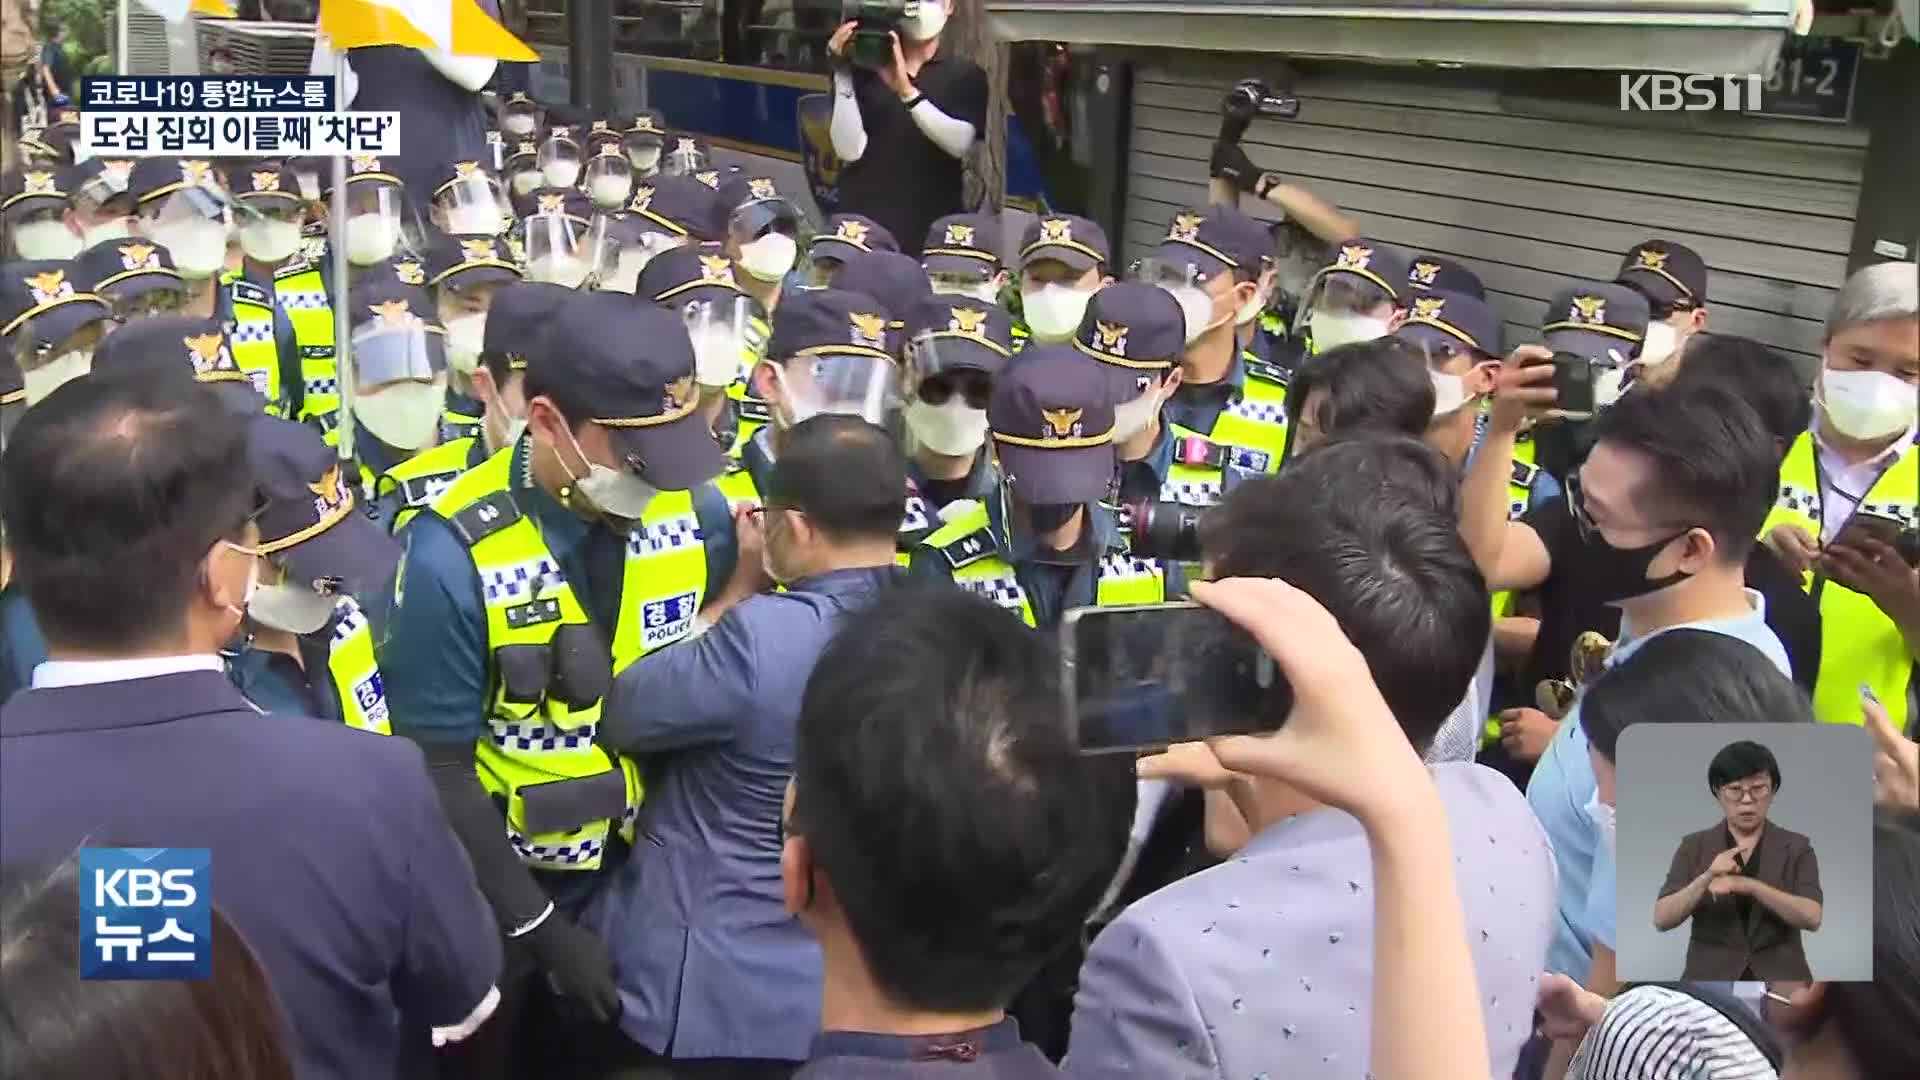 서울 도심 대규모 집회 오늘도 무산…산발적 충돌